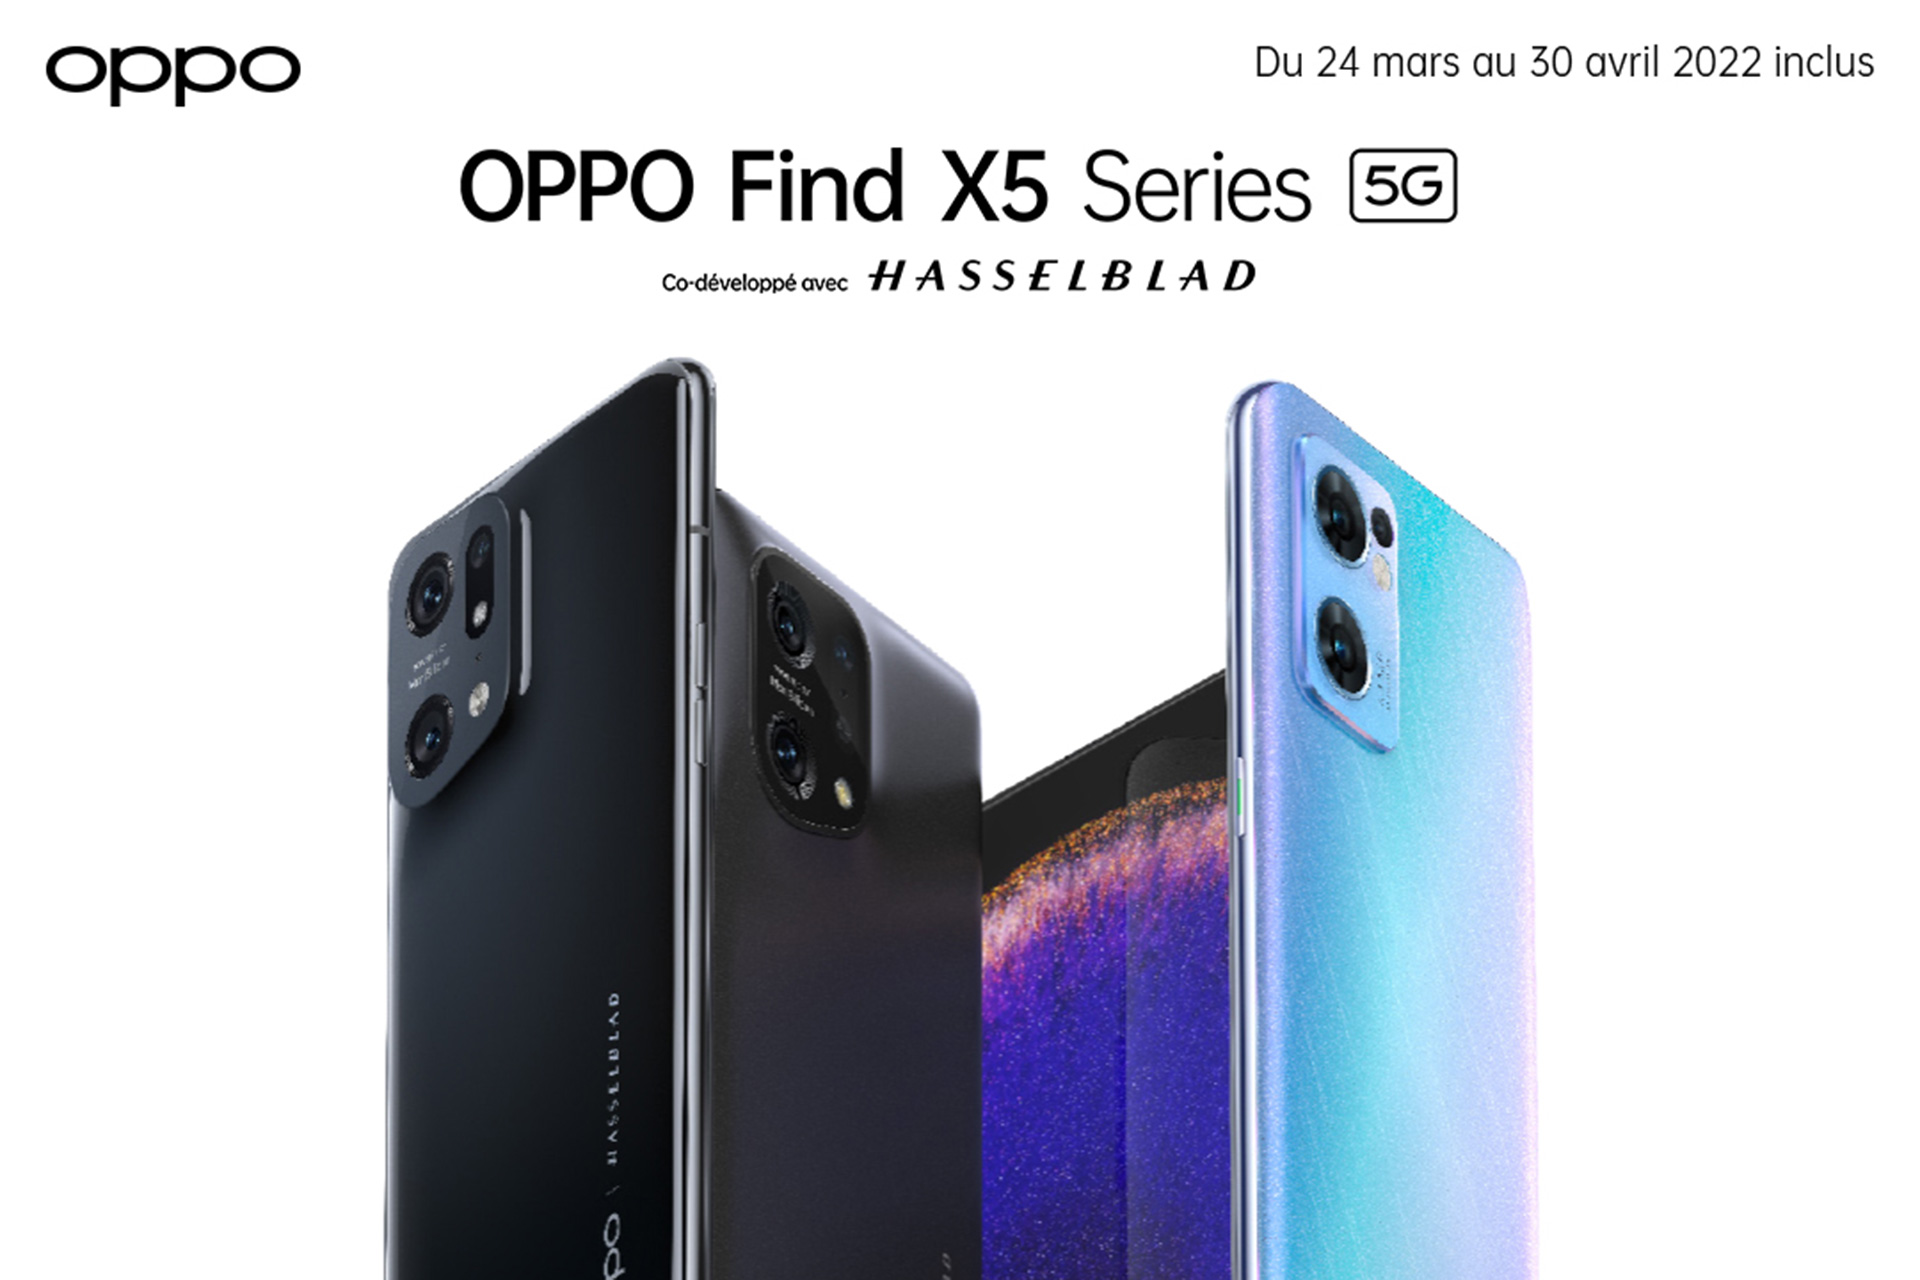 Les OPPO Find X5 Series 5G sont enfin disponibles à l’achat 💝